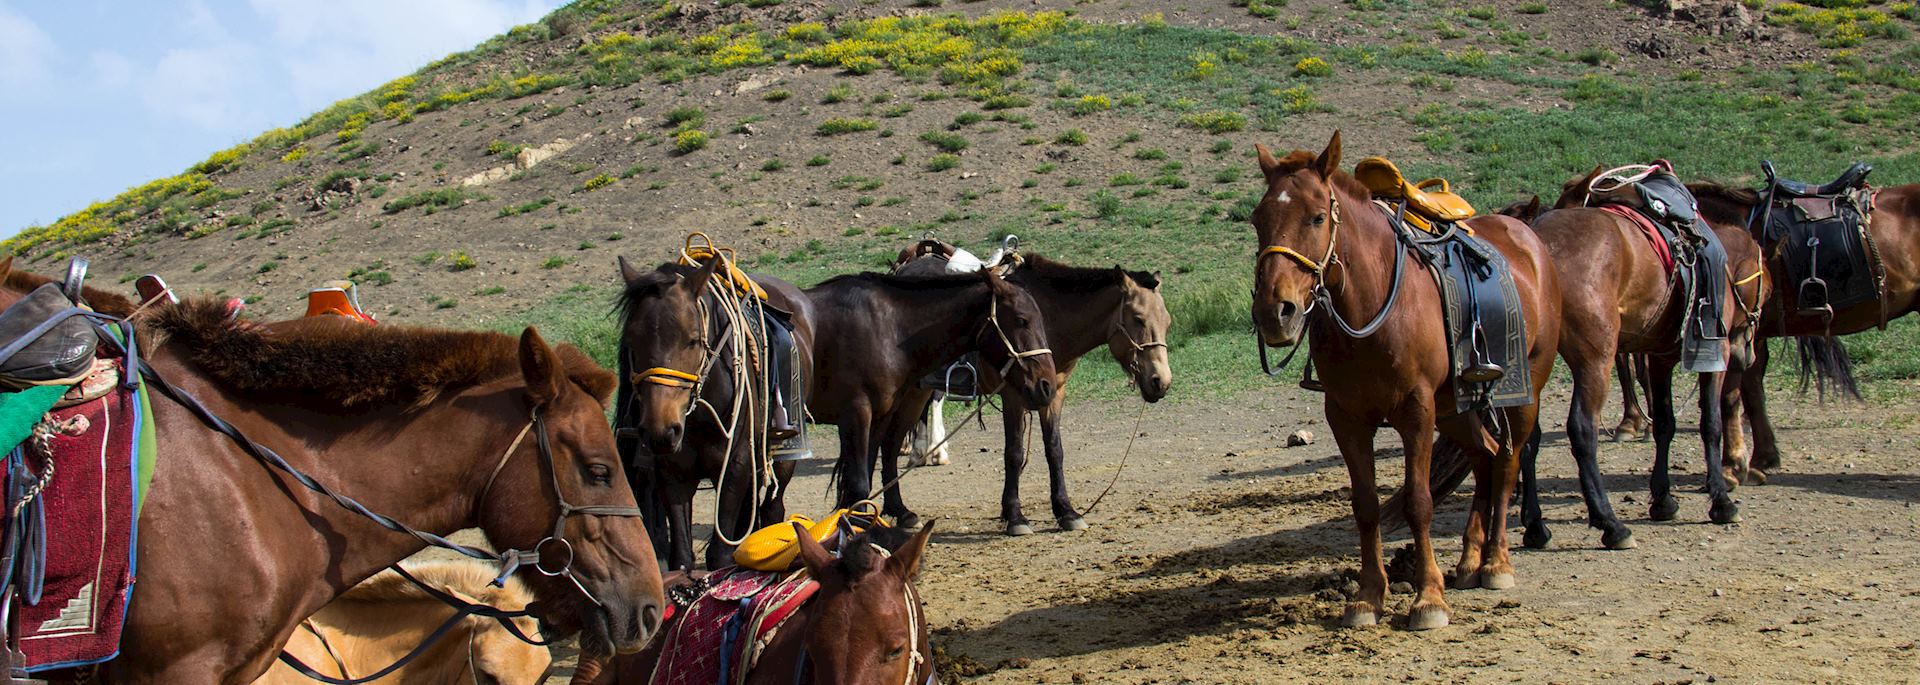 Horses in Gobi Gurvansaikhan National Park